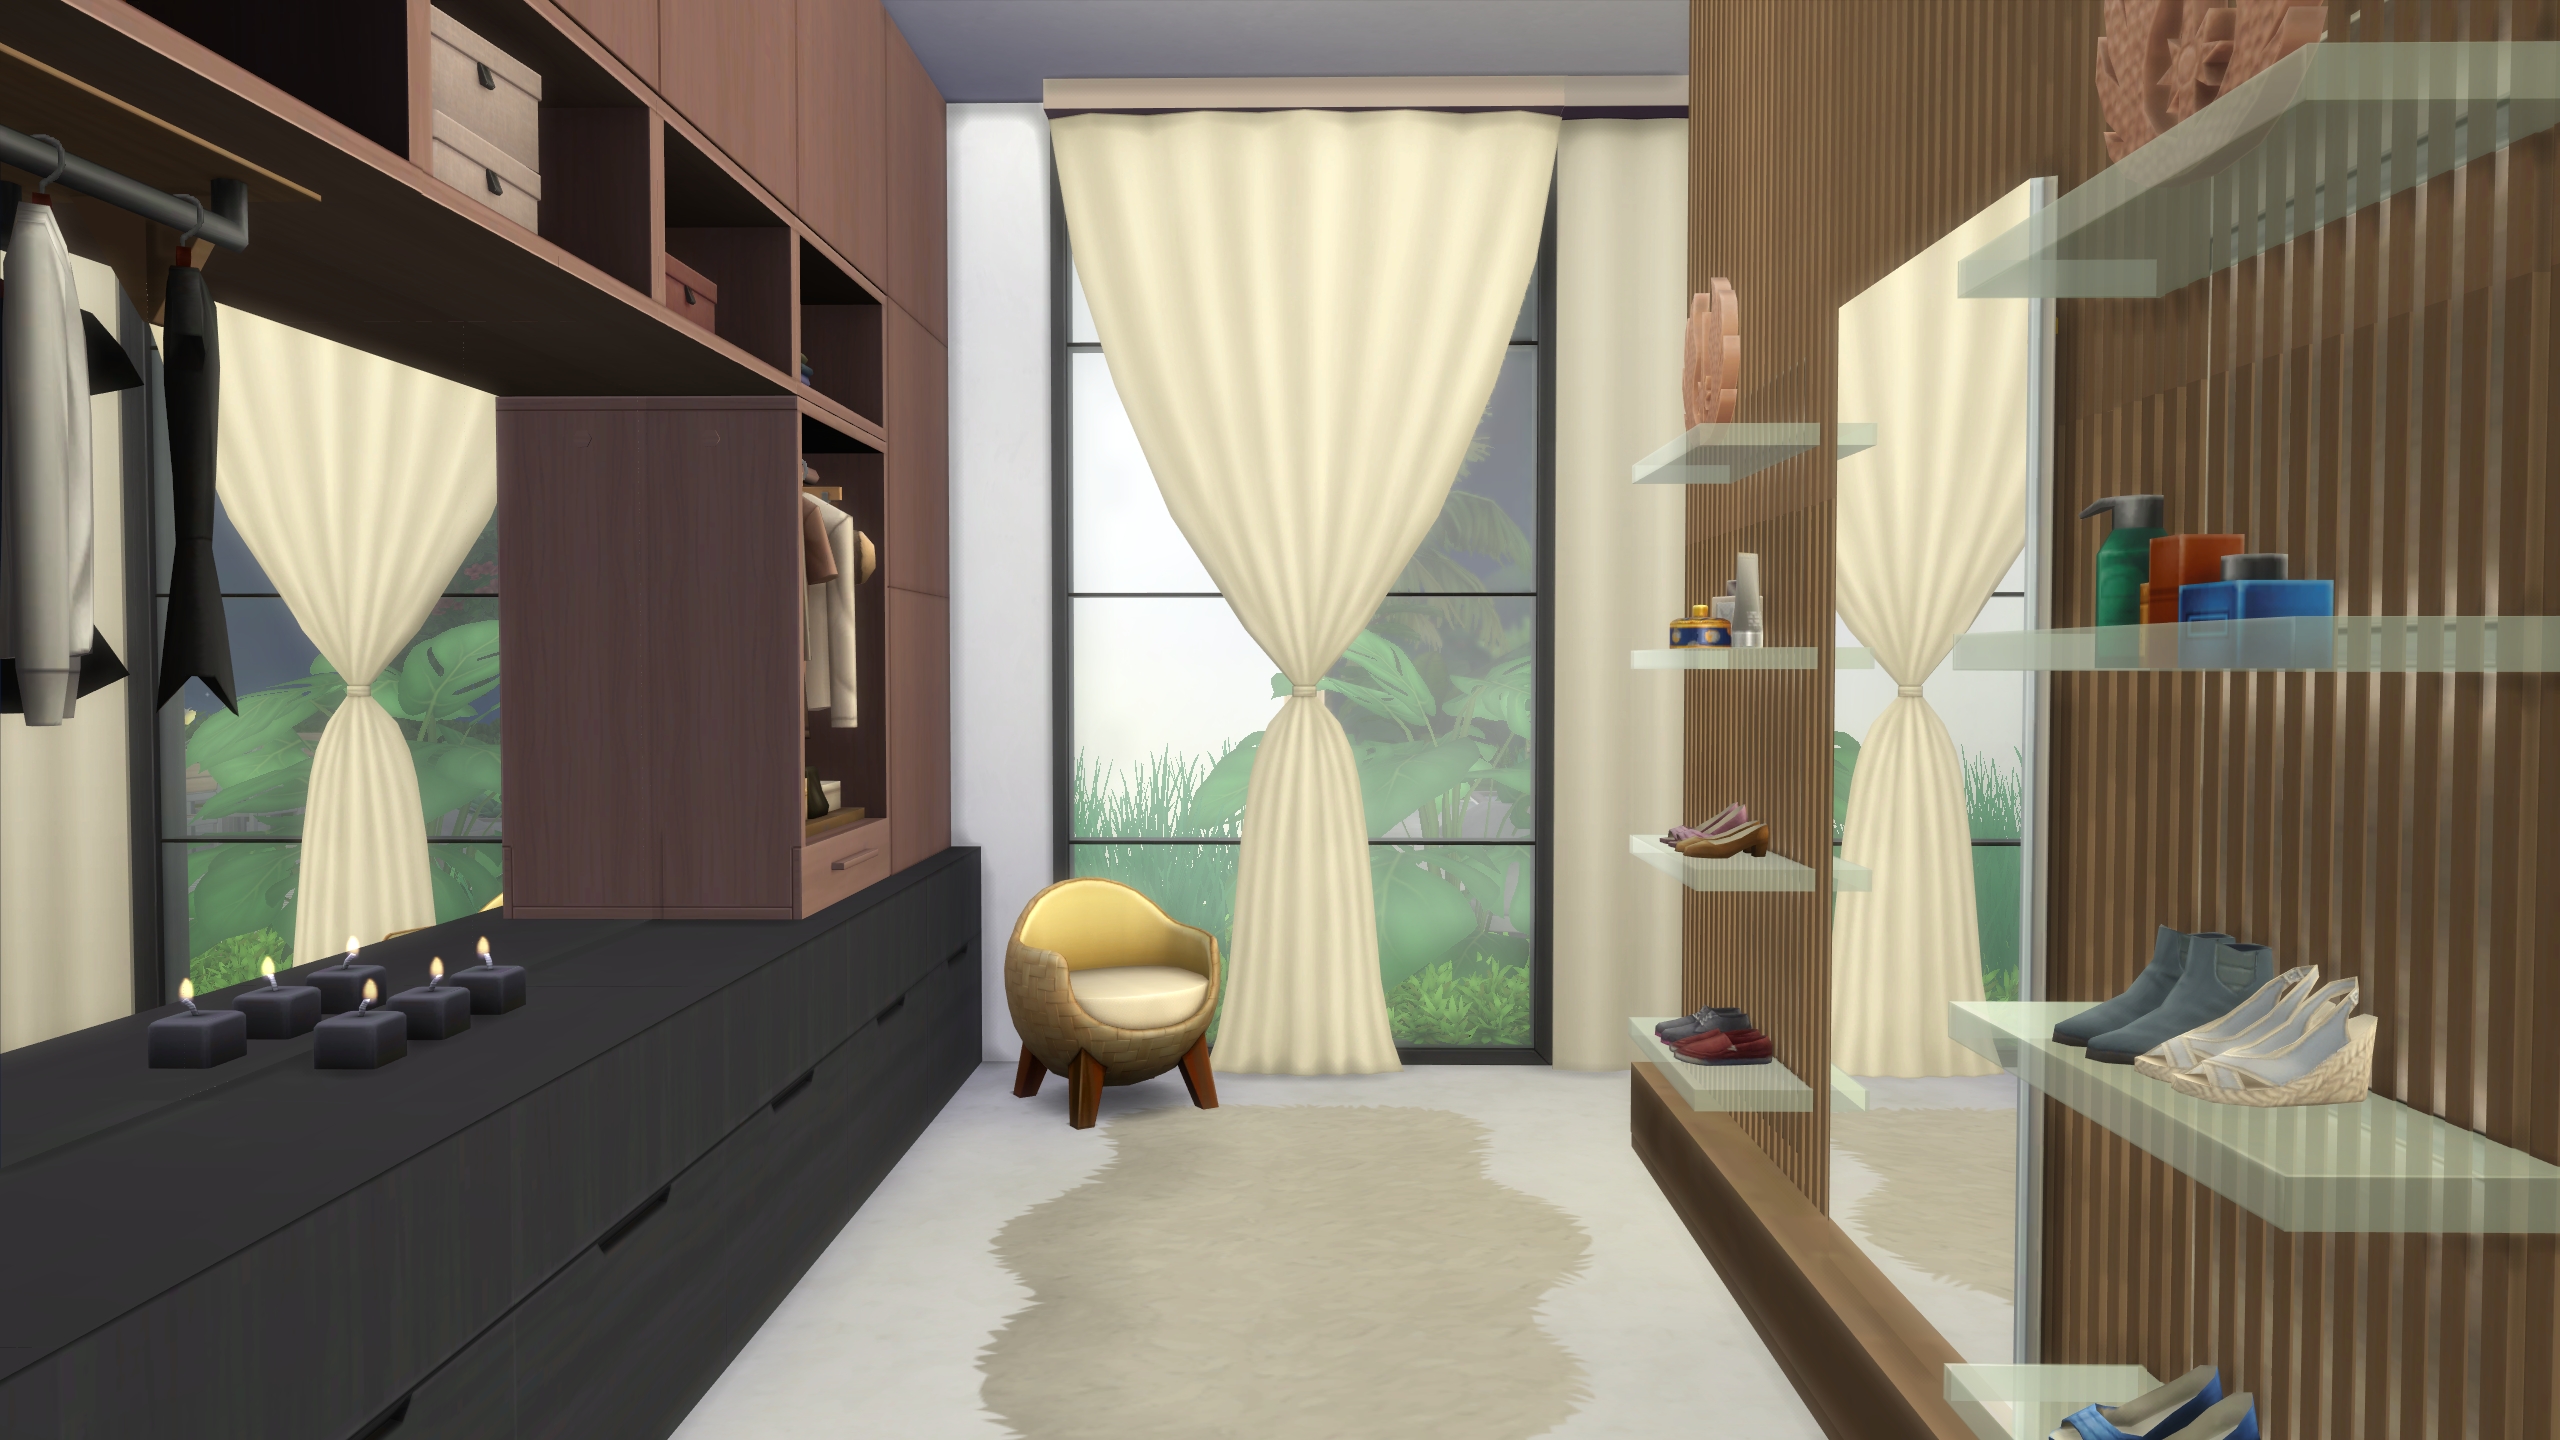 Gym & Spa Villa 🌴 - Screenshots - The Sims 4 Rooms / Lots - CurseForge